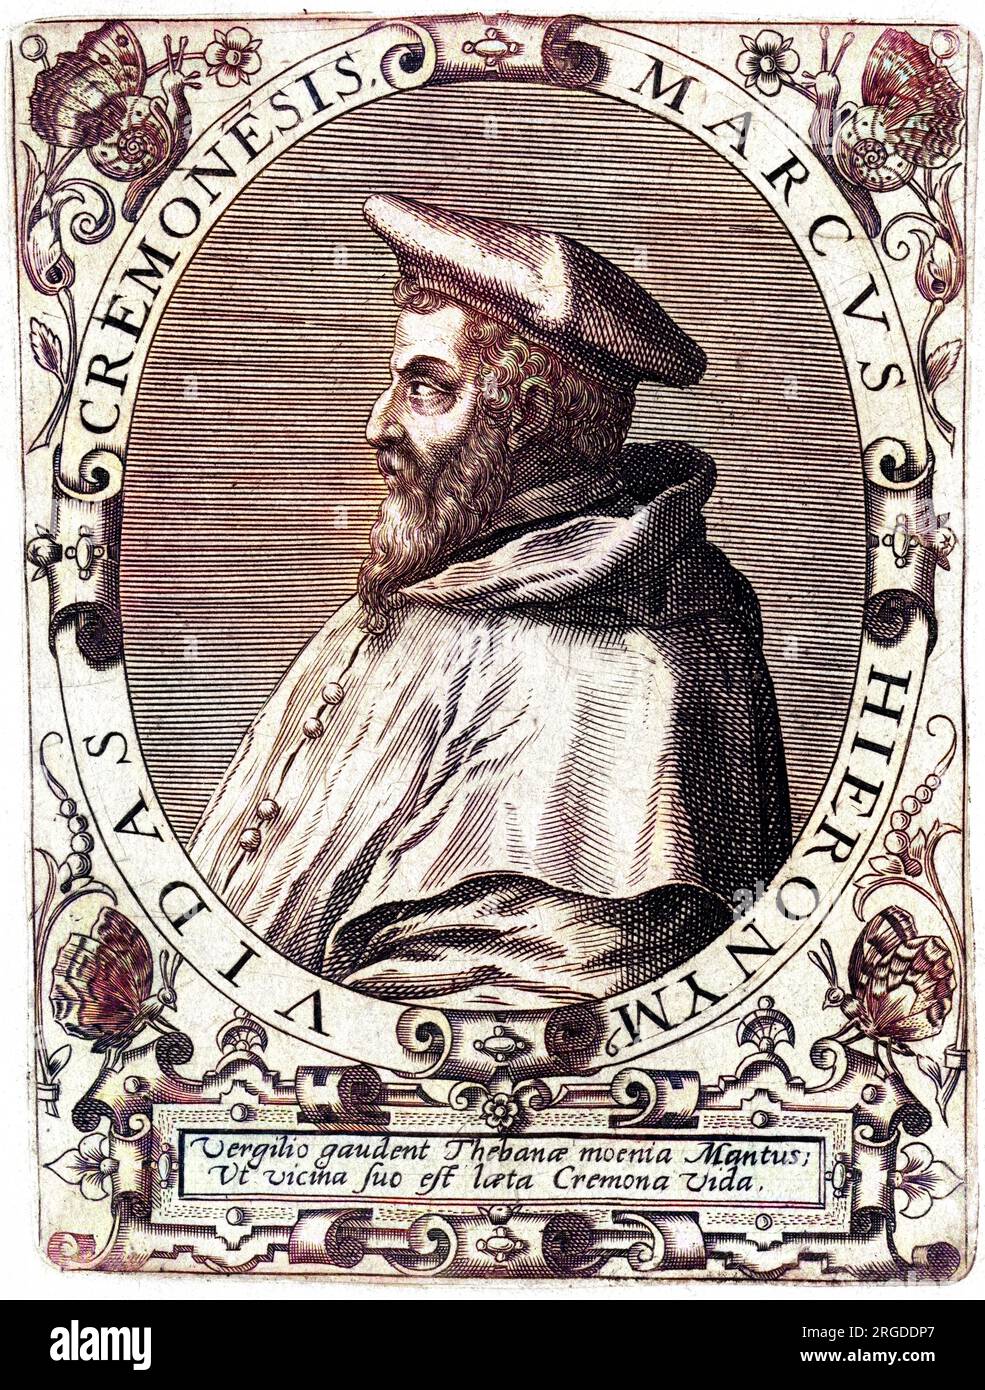 MARCO GIROLAMO (HIERONYMUS) VIDA, italienischer Kirchenmann, Bischof von Alba und Dichter Stockfoto